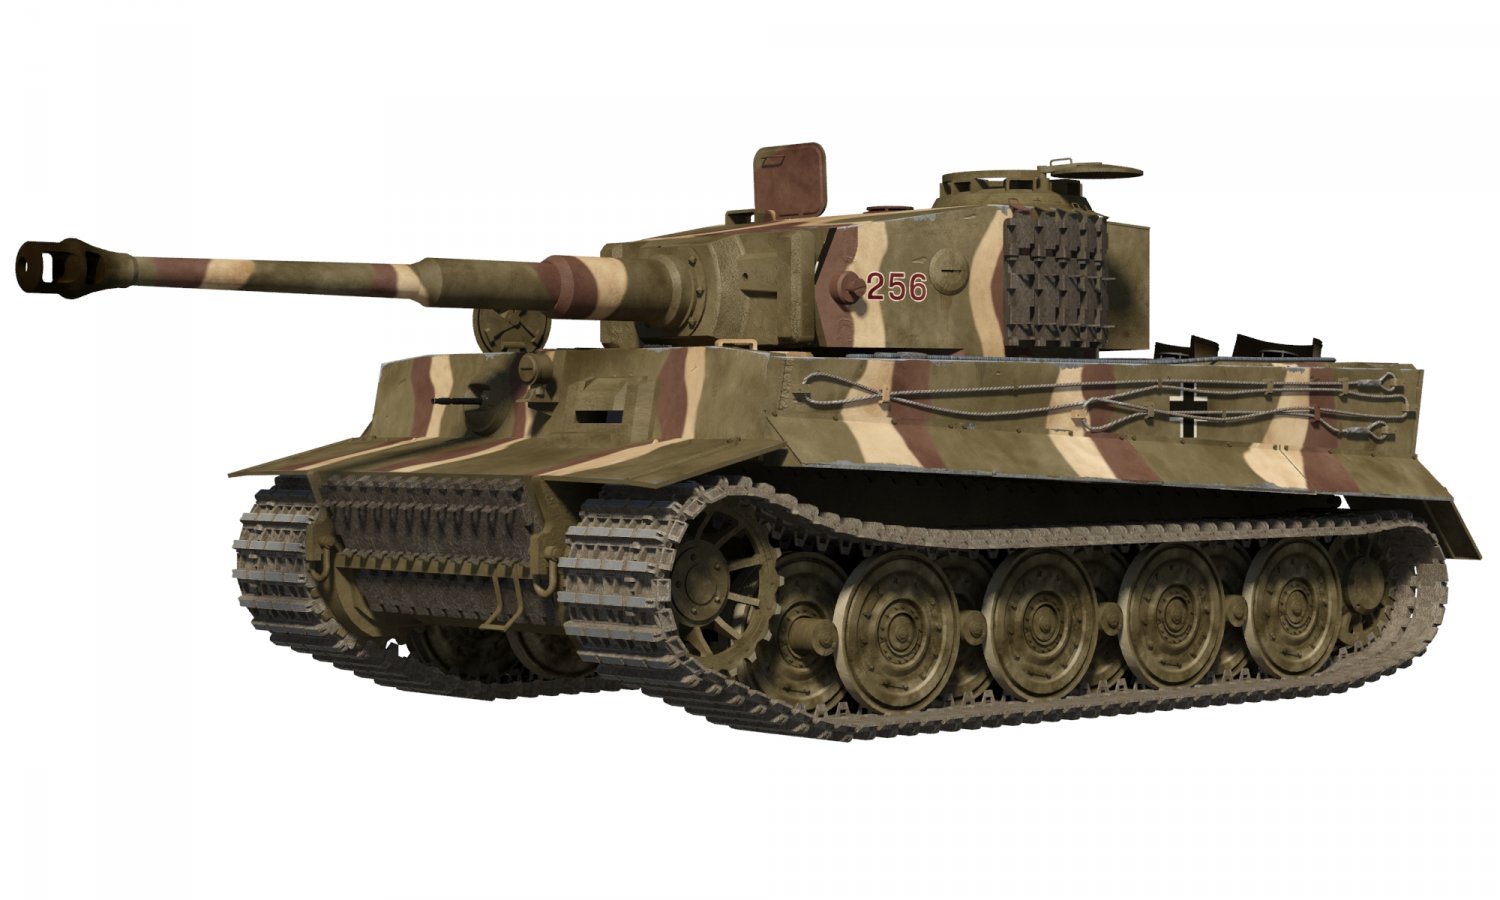 tiger_1_tank_3d_model_c4d_max_obj_fbx_ma_lwo_3ds_3dm_stl_898760_o.jpg